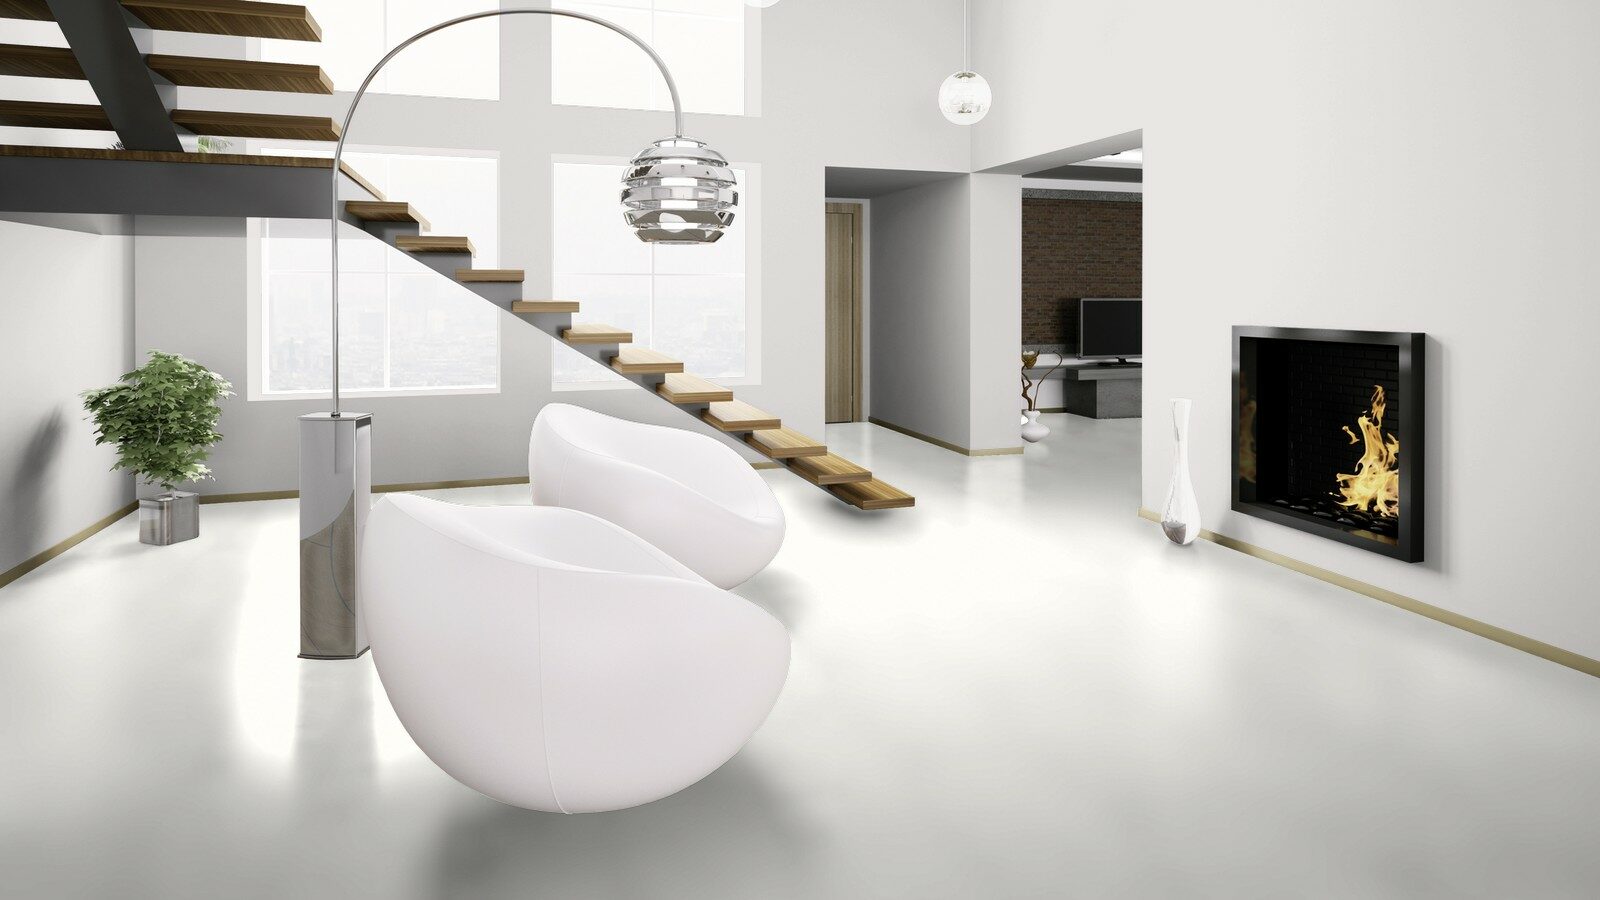 100 лучших идей дизайна: линолеум в интерьере квартиры на фото